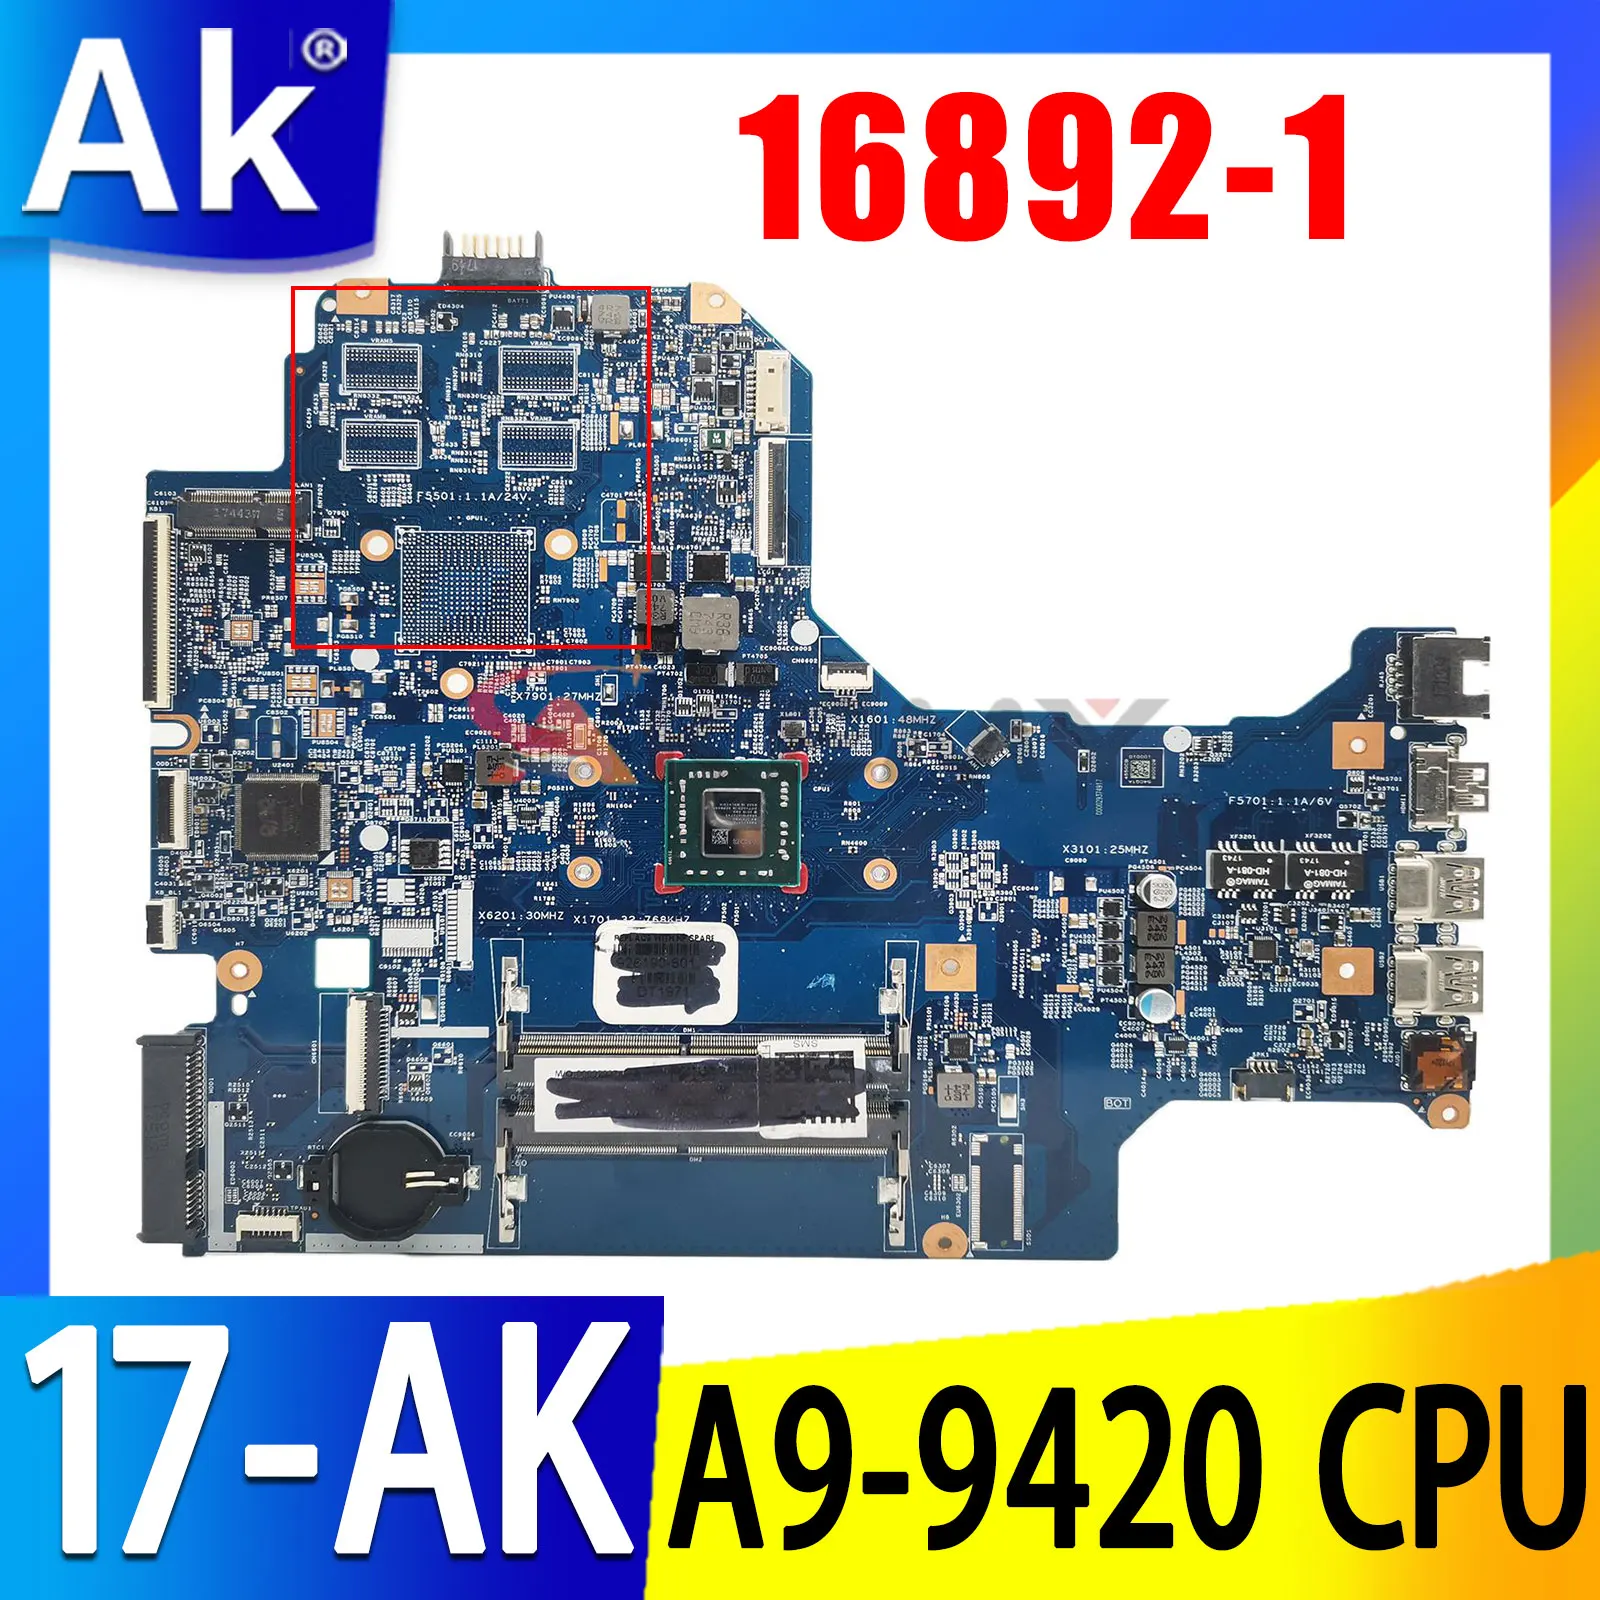 

926190-601 926190-501 926190-001 A9-9420 CPU For HP PAVILION 17-AK 17Z-AK Laptop Motherboard 16892-1 448.0CB02.0011 100% Test OK